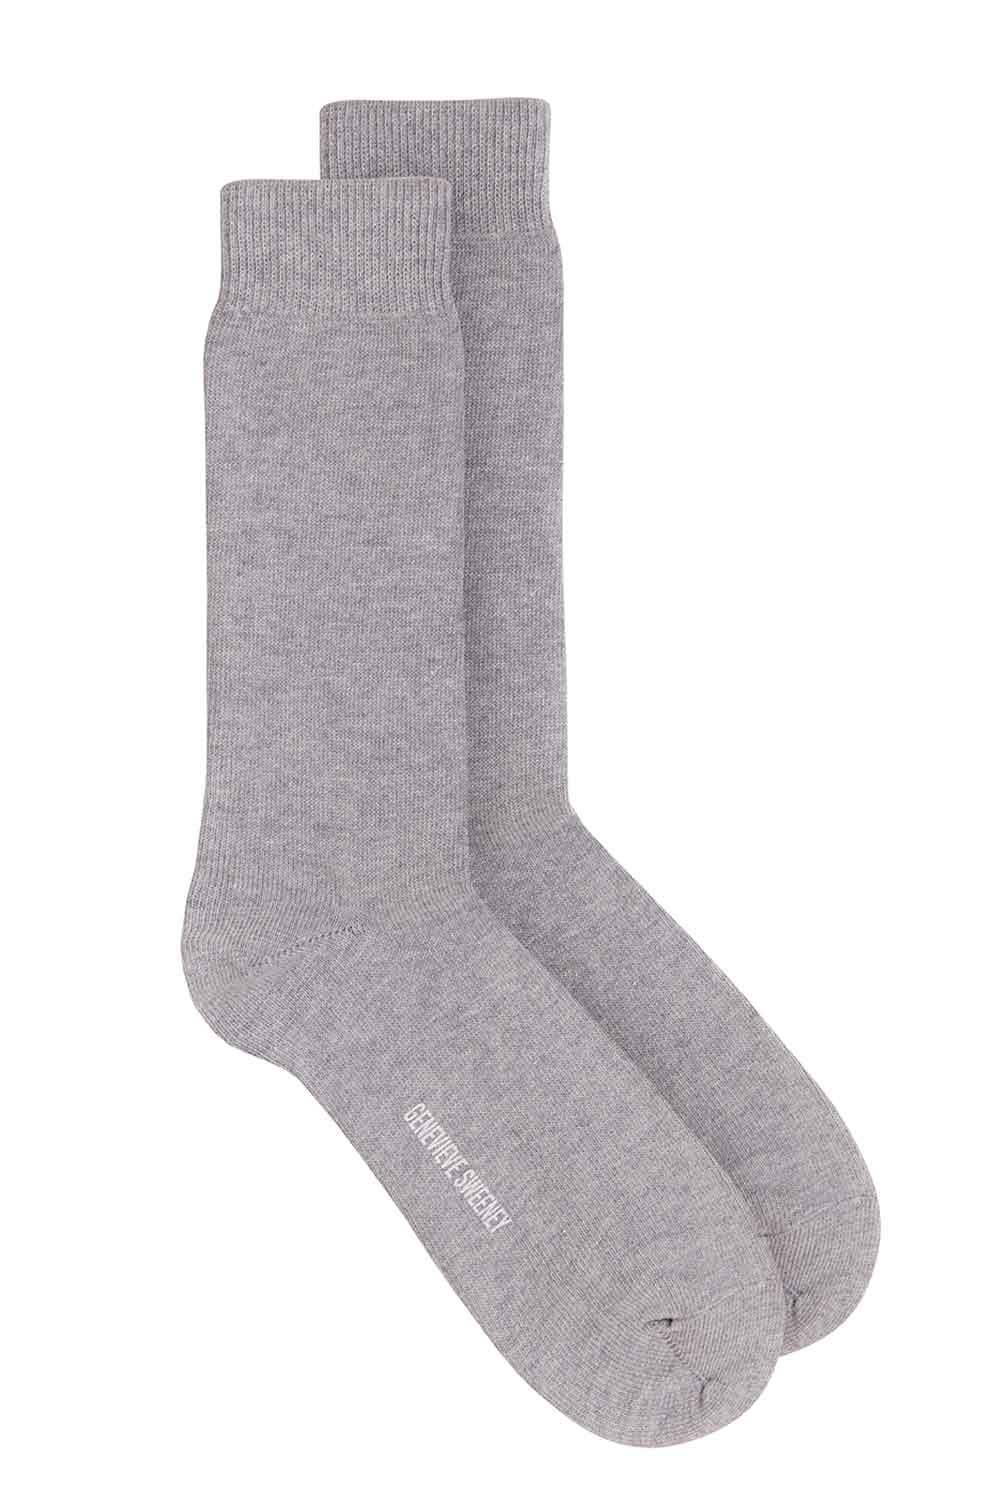 Luxury Organic Cotton Socks | Grey Melange | Unisex | British Made